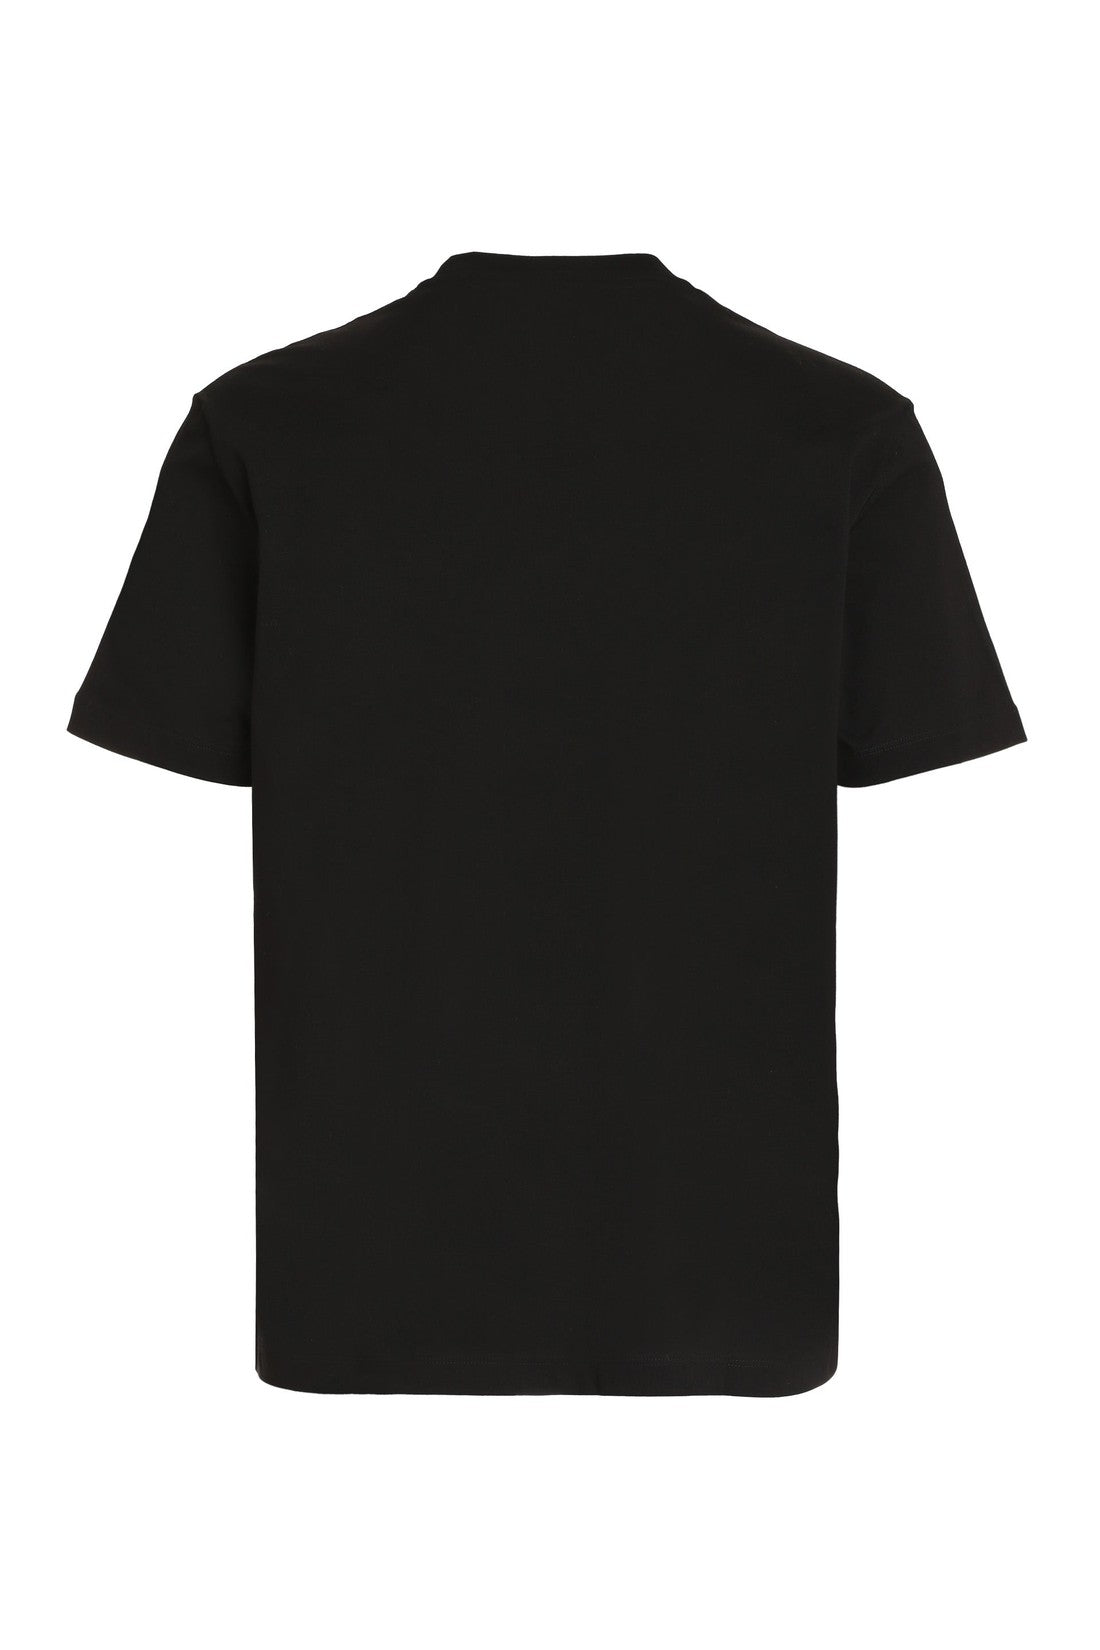 Versace-OUTLET-SALE-Logo printed cotton T-shirt-ARCHIVIST